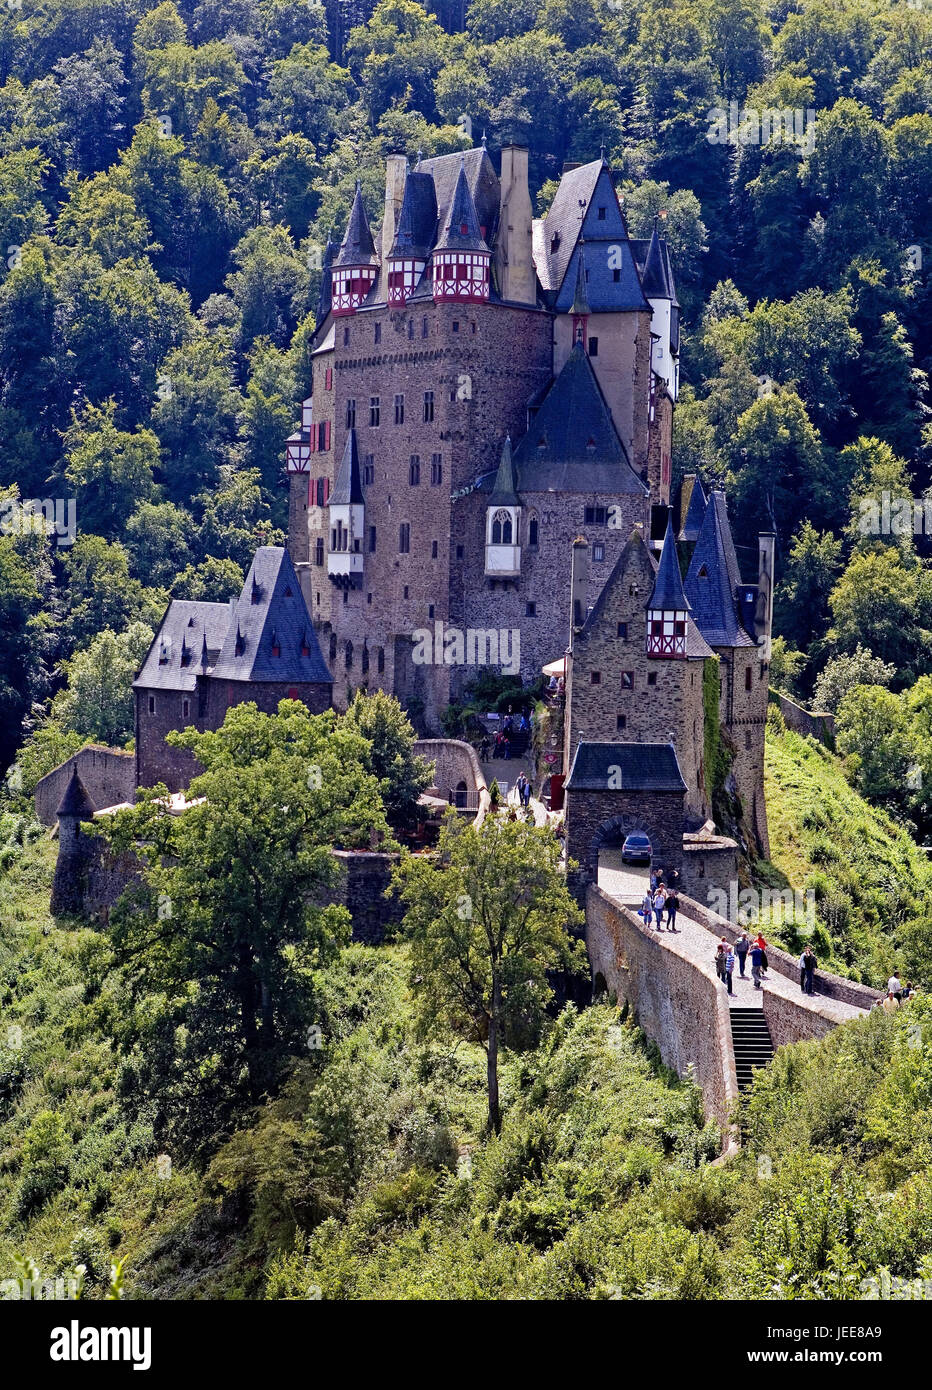 In Germania, in Renania Palatinato, Castello Eltz, turistiche, Eifel, legno, legno di montagna, castello, Castello di mattoni, mattoni architettura, architettura, luogo di interesse, la cultura, la persona, destinazione, turismo, destinazione Foto Stock